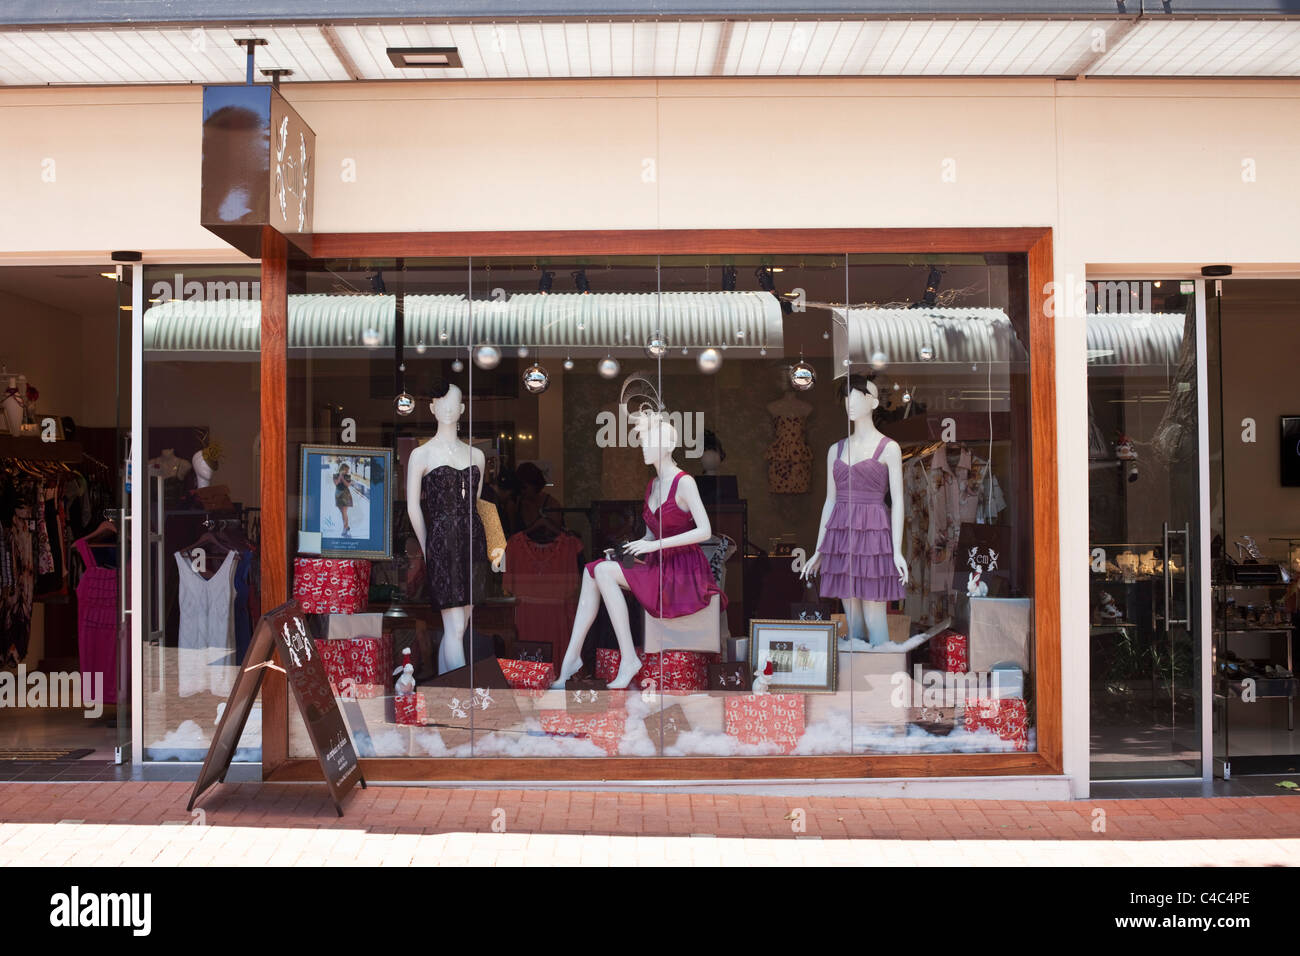 Boutique di abbigliamento. Subiaco, Perth, Australia occidentale, Australia Foto Stock